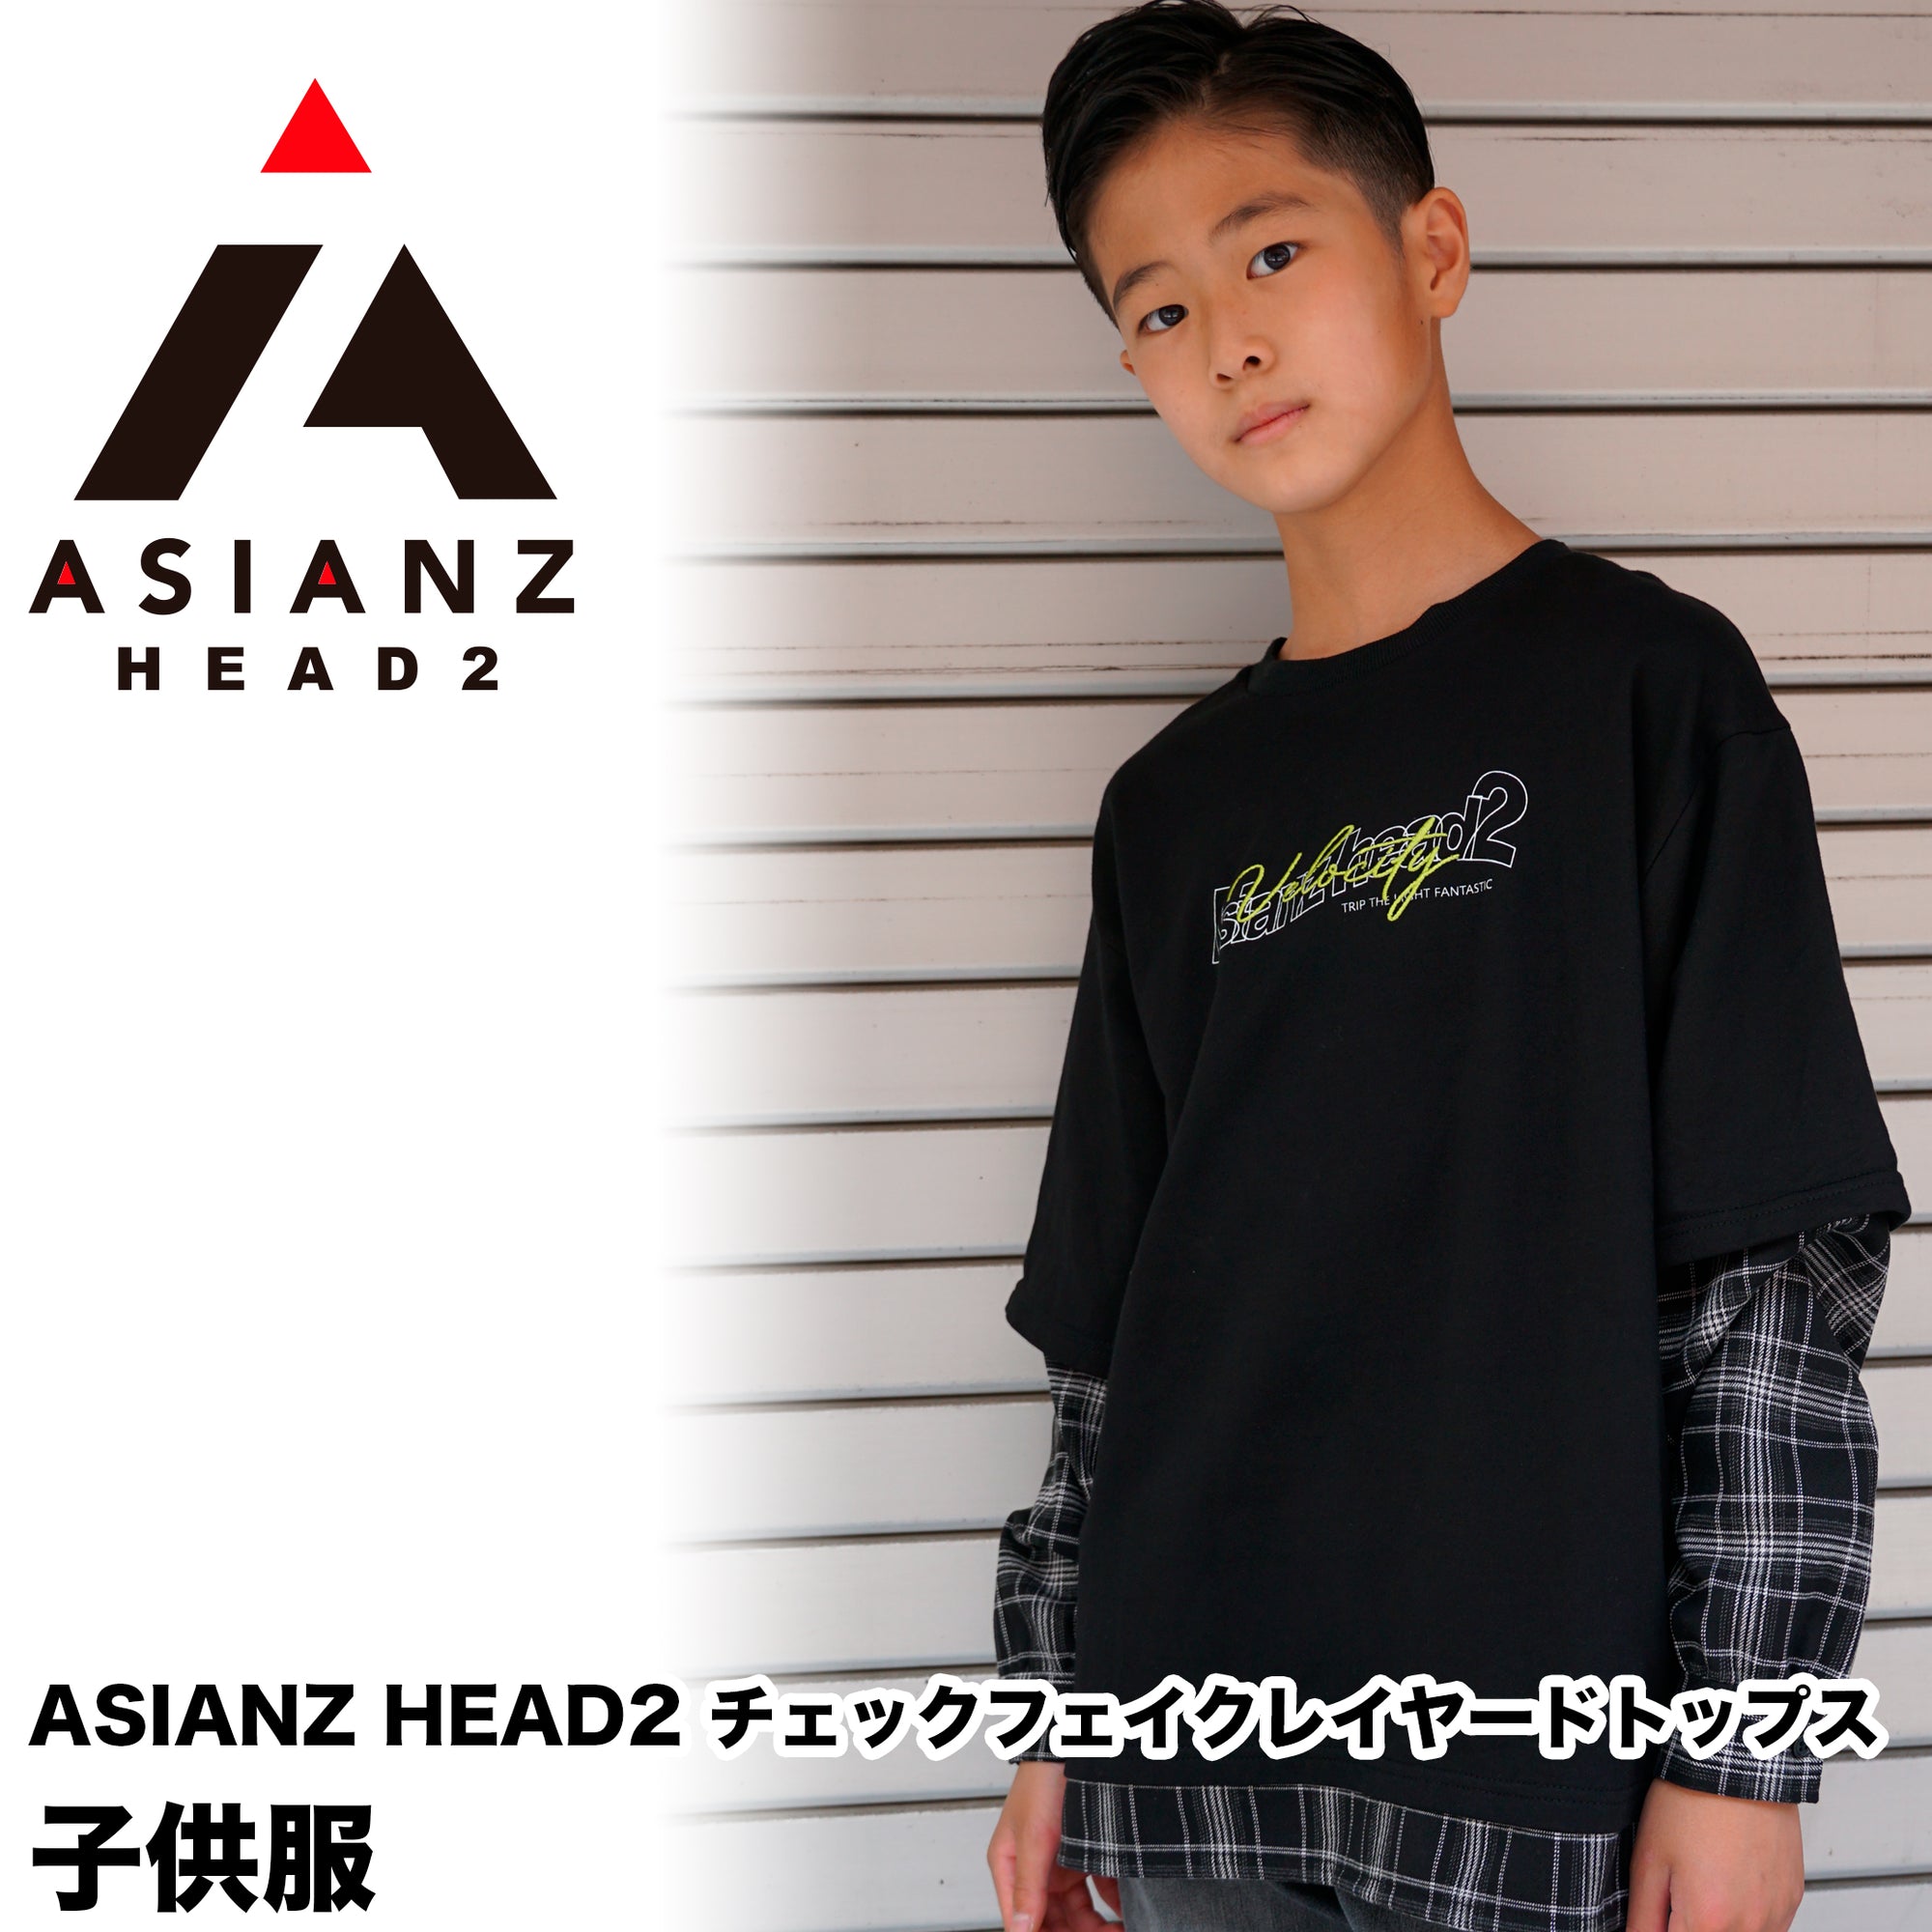 (40%オフ! セール商品)ASIANZ HEAD2 チェックフェイクレイヤードトップス キッズウェアー